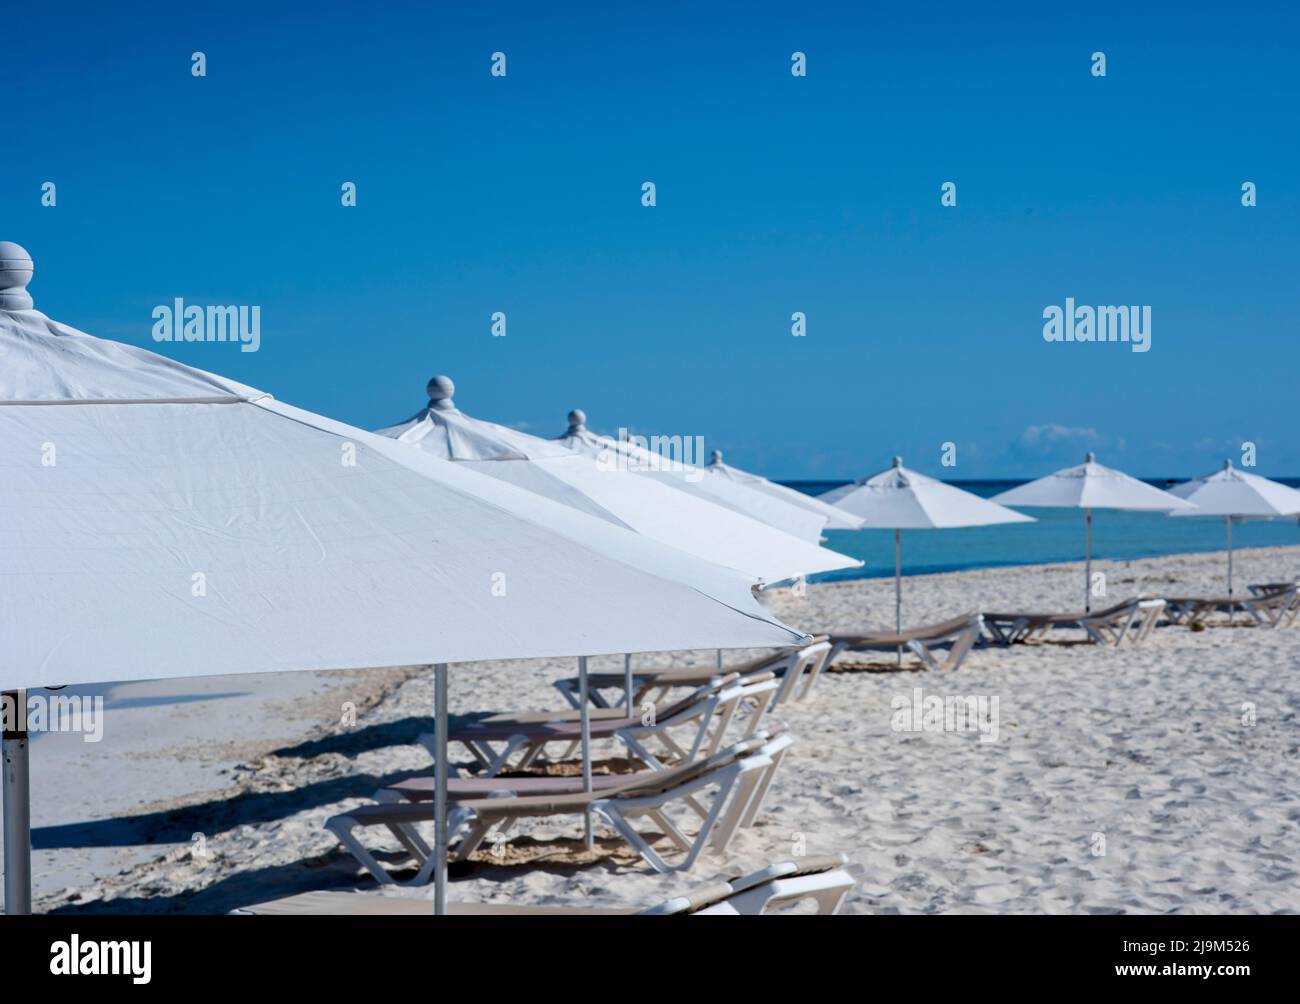 Hamacas y sombrillas blancas en una playa tropical desierta en Isla Mujeres, México Foto de stock